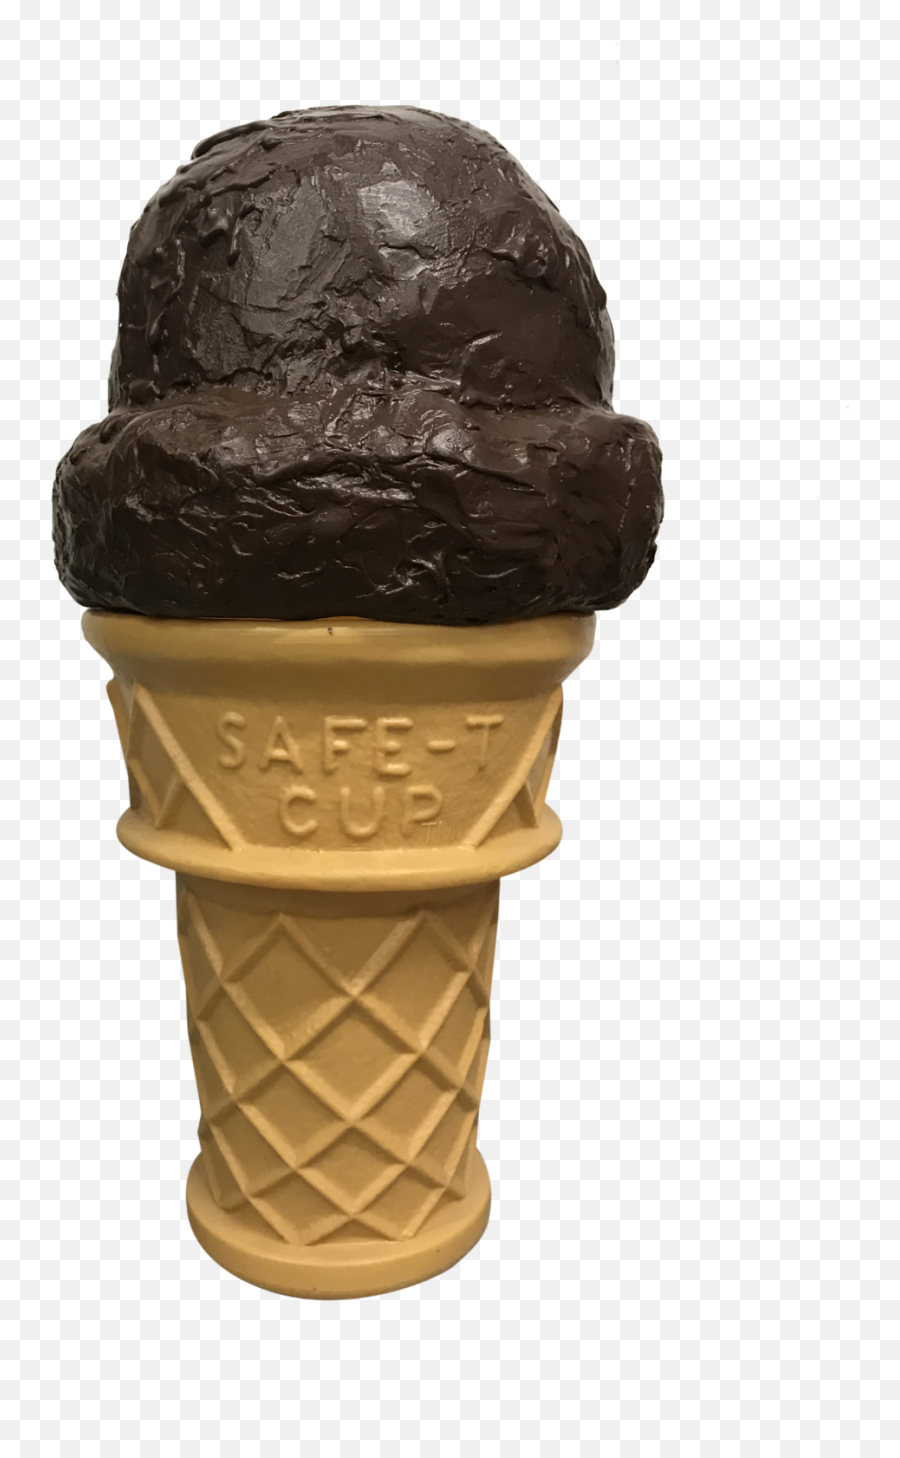 Chocolate Ice Cream Cone - Ice Cream Cone Png,Ice Cream Cone Transparent